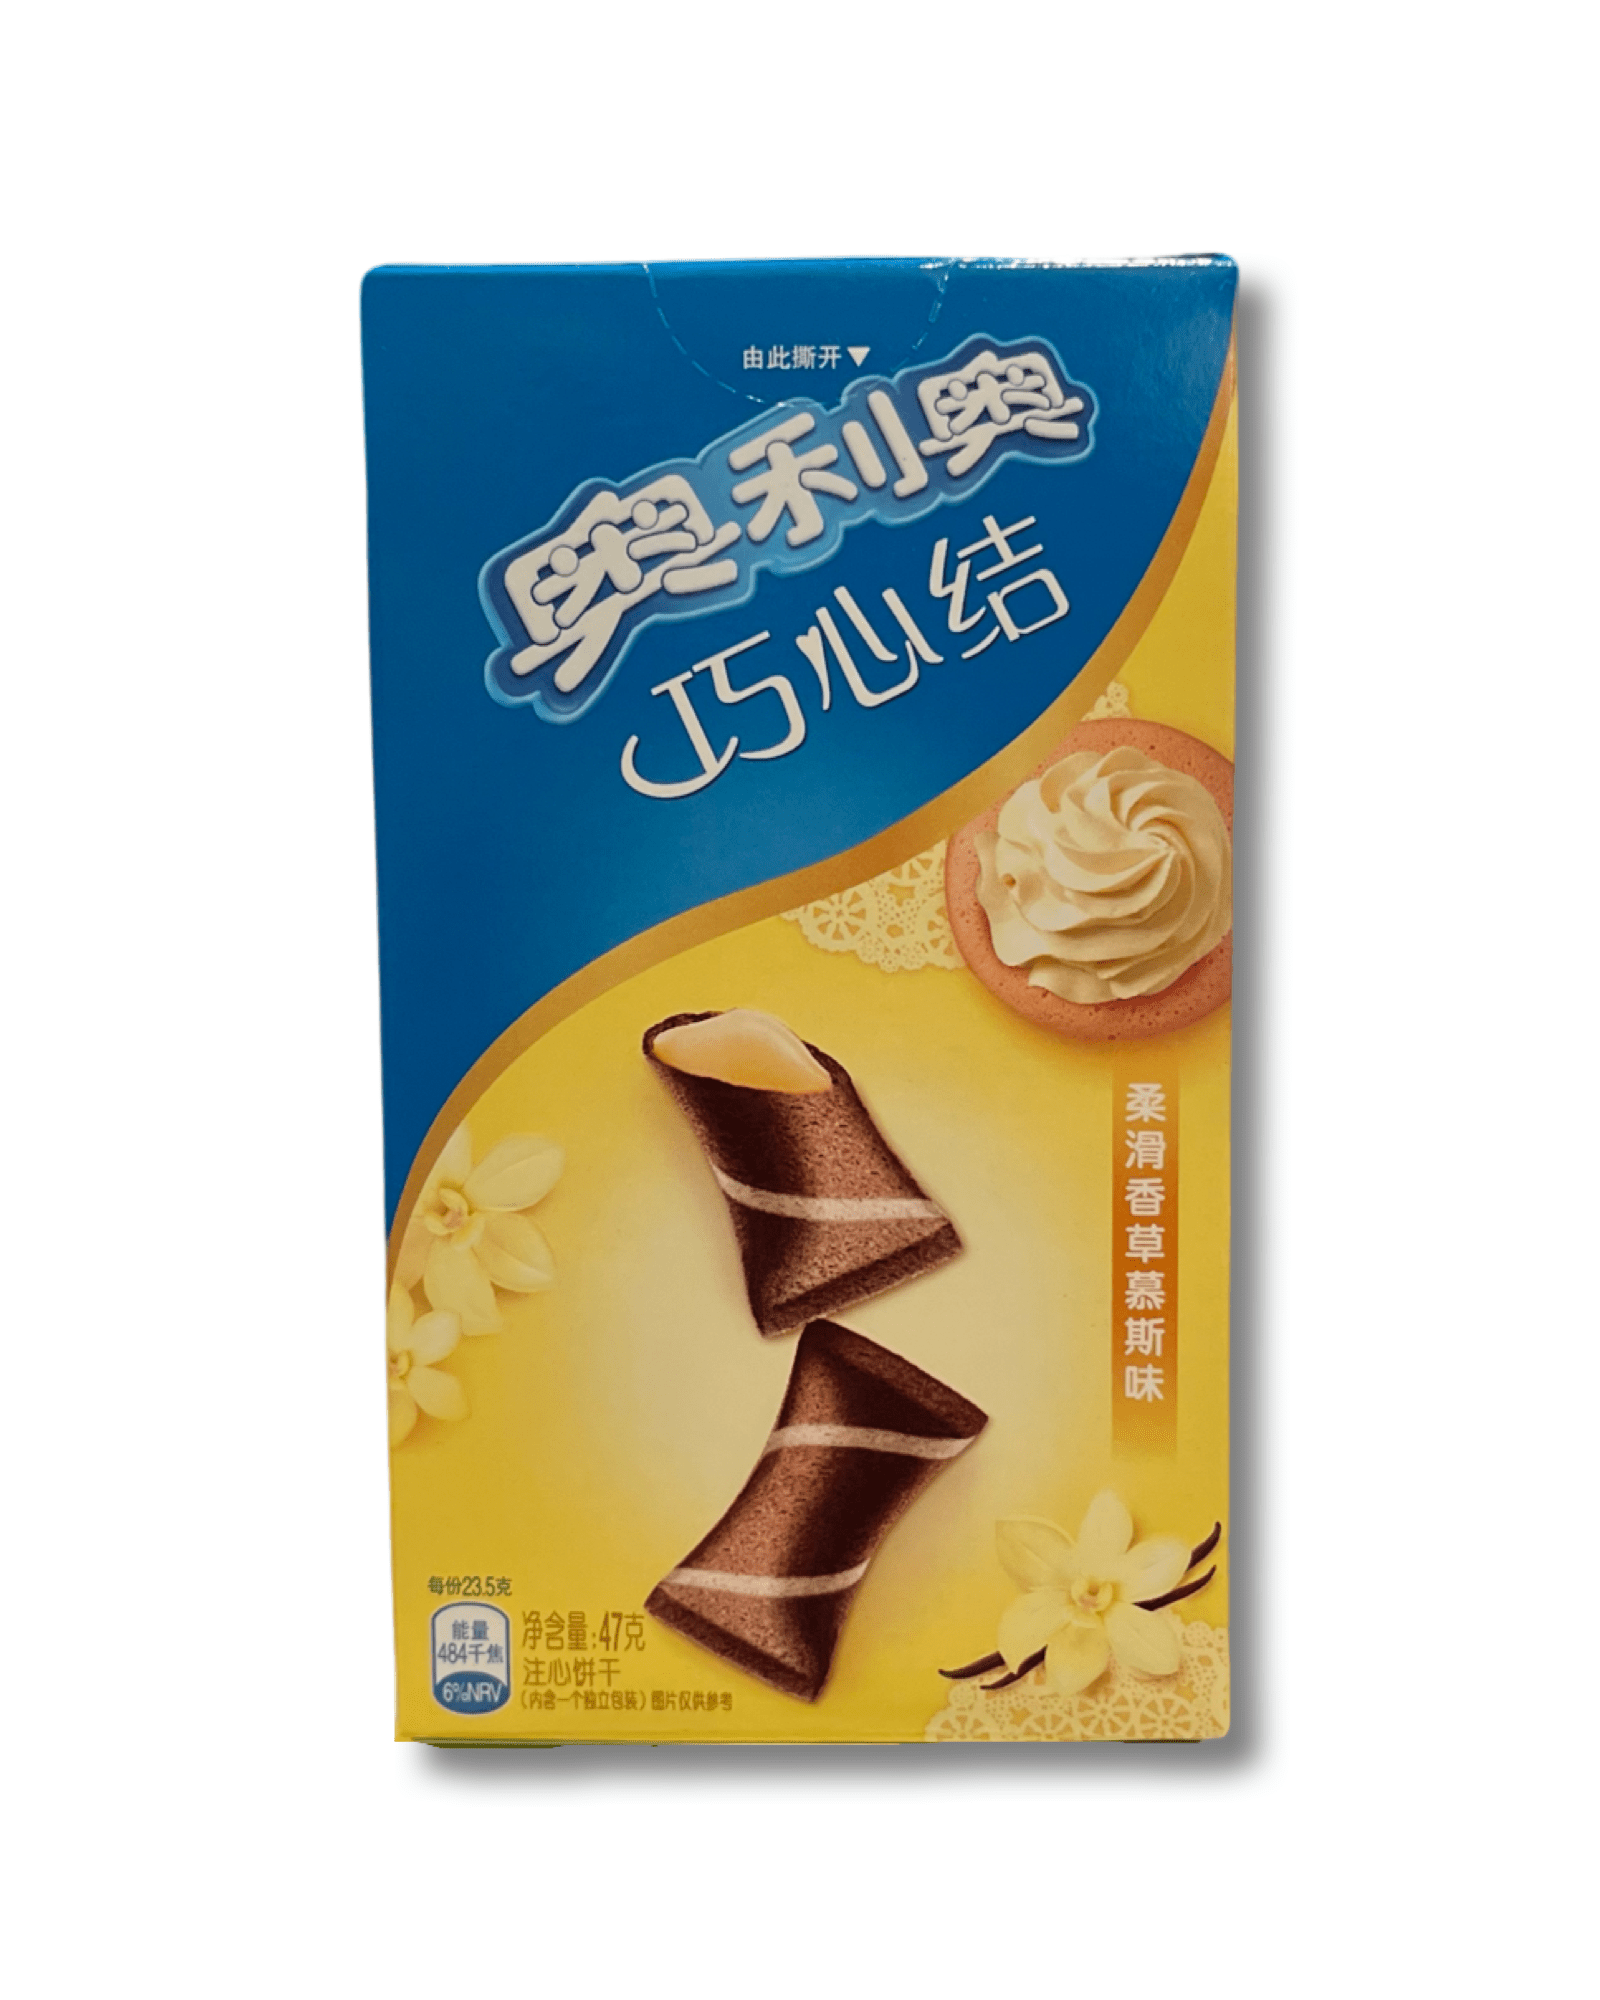 Oreo Bow Ties Vanilla (China) no - Exotic Soda Company